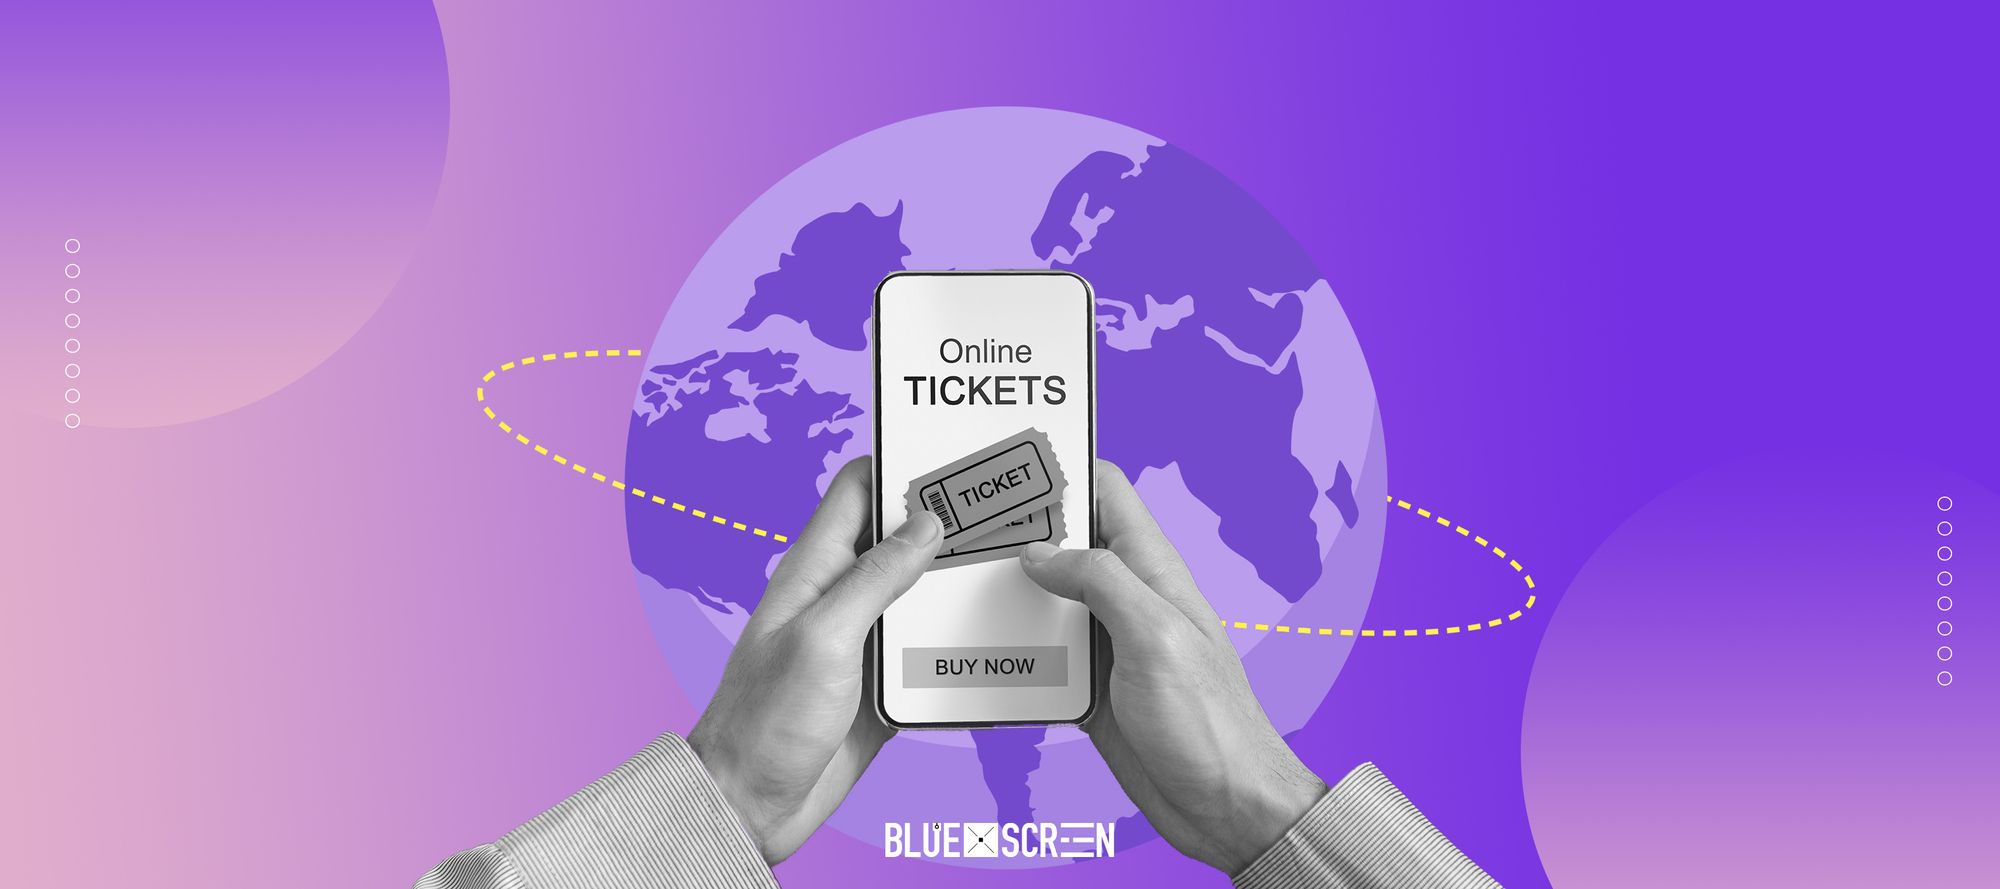 Казахстанцы стали чаще покупать железнодорожные билеты онлайн